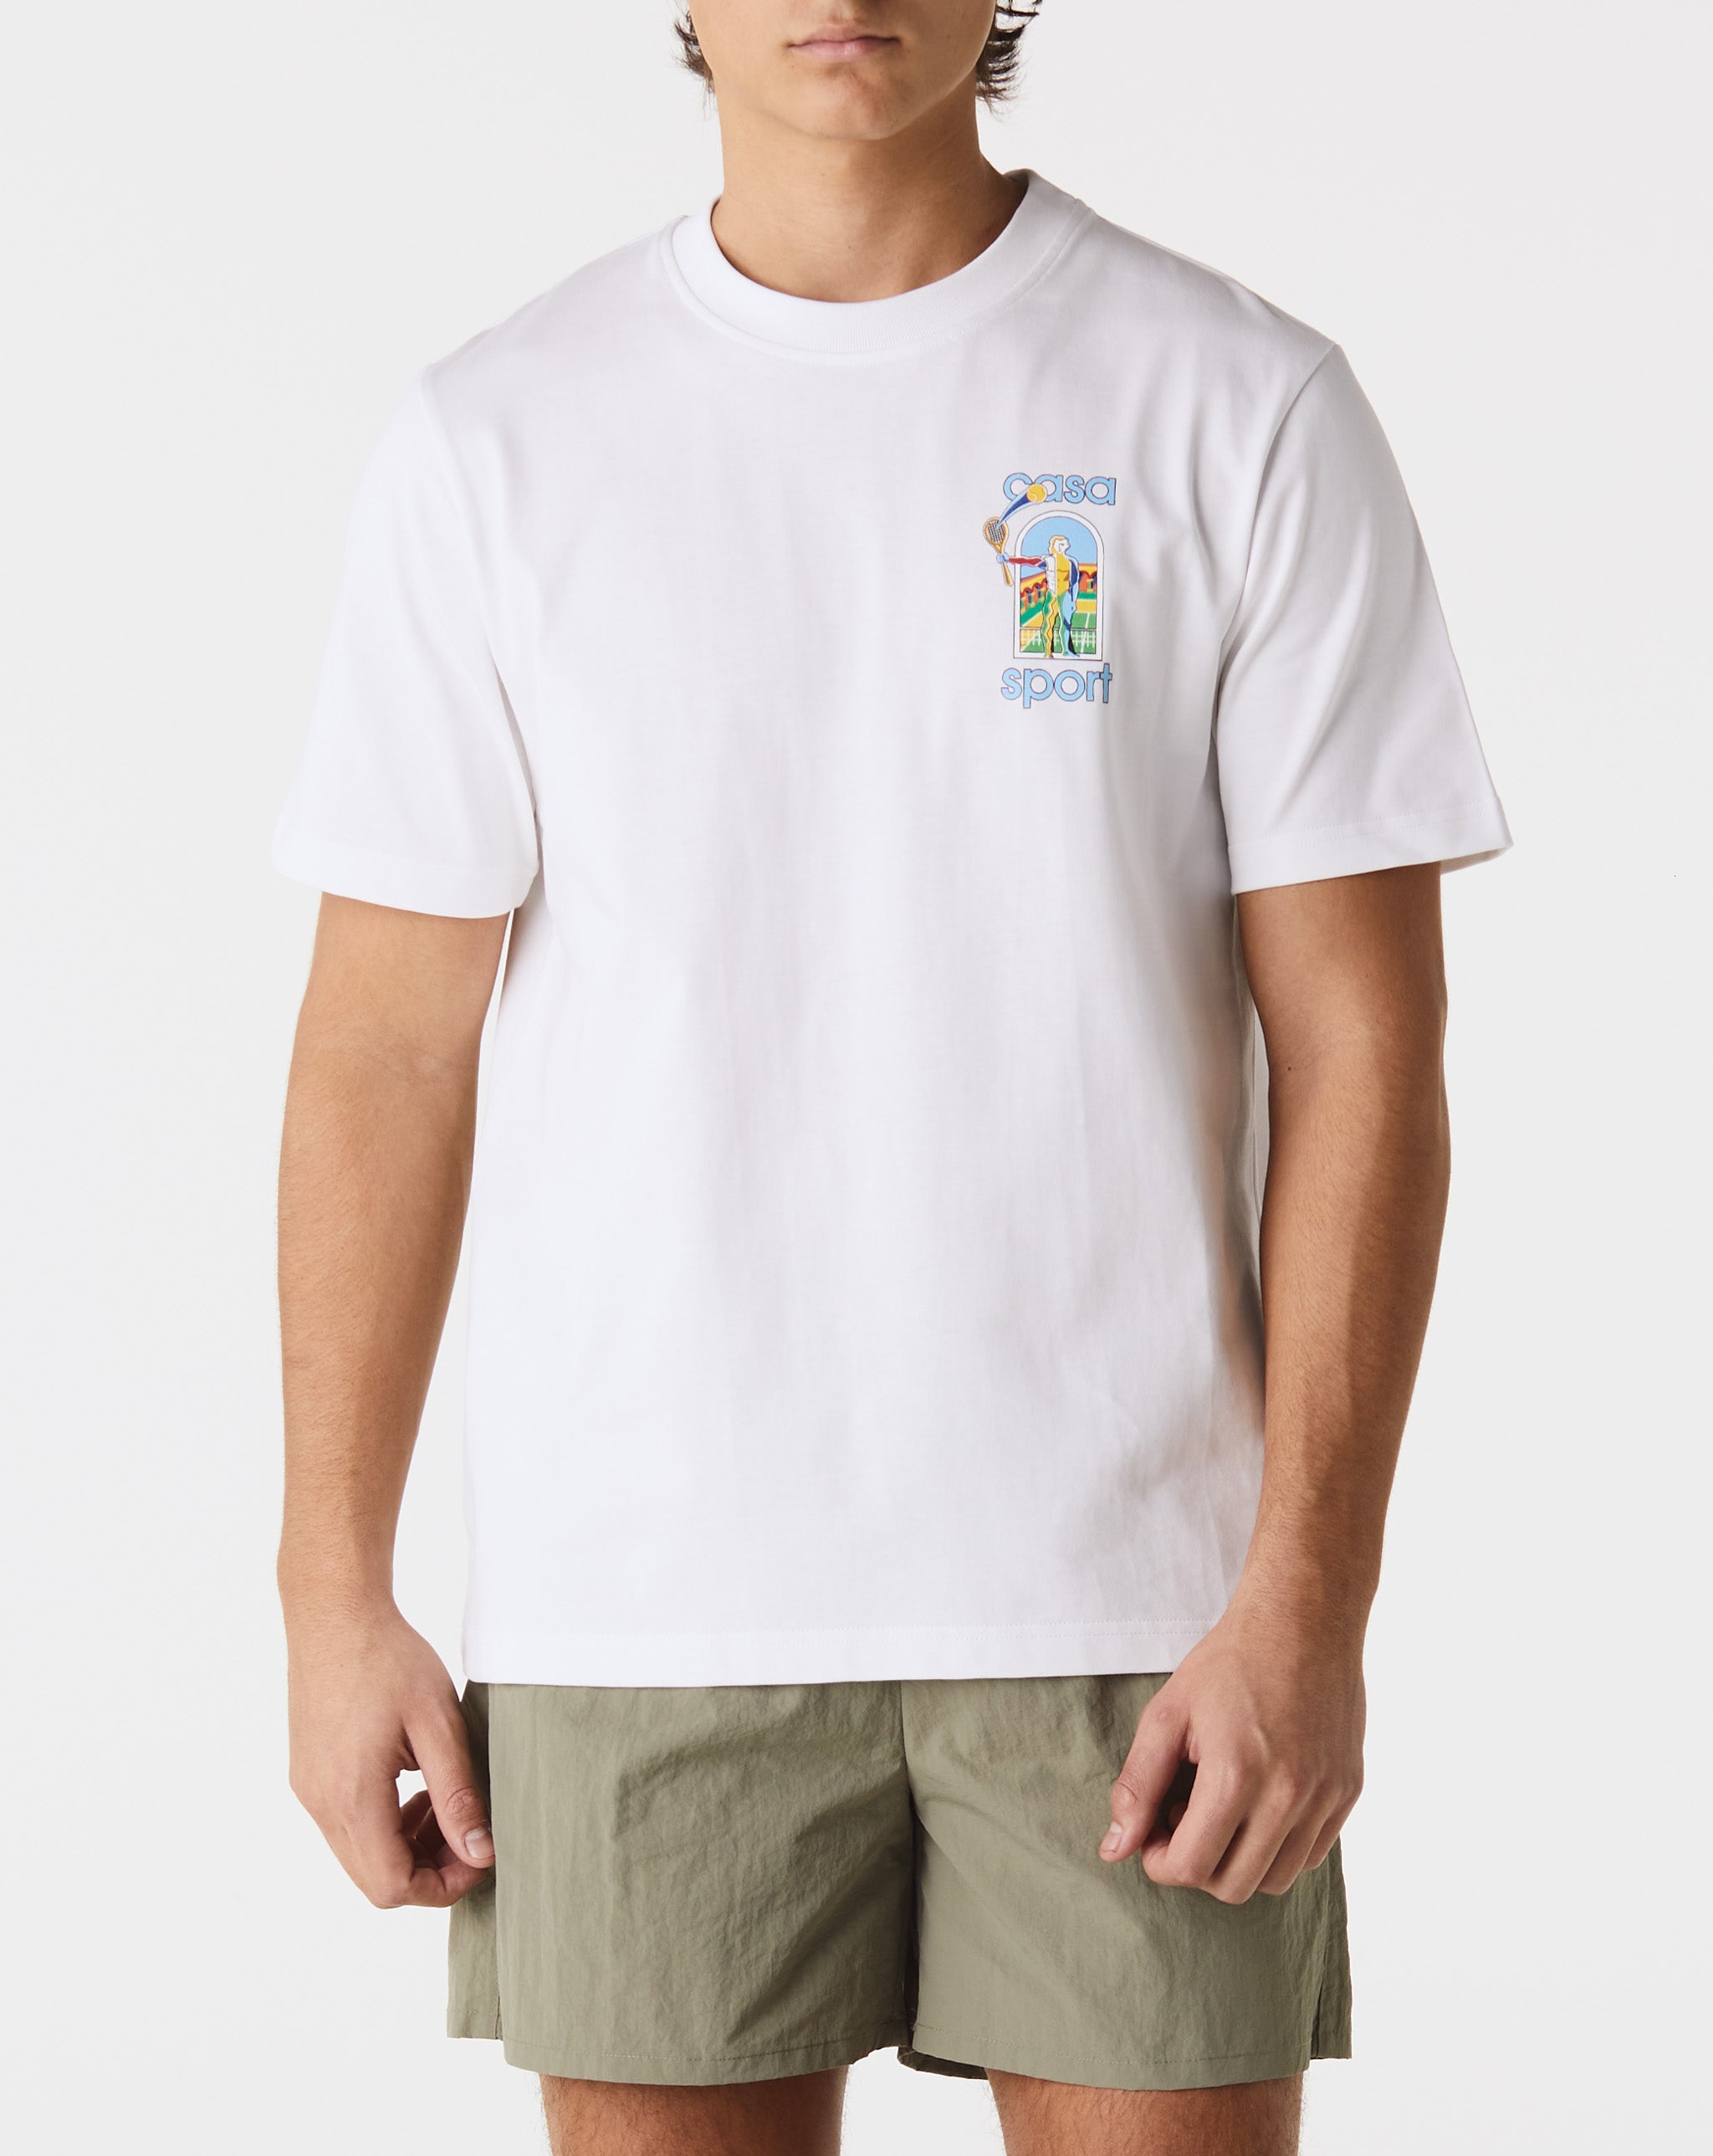 Casablanca Le Jeu Colore T-Shirt  - Cheap Urlfreeze Jordan outlet